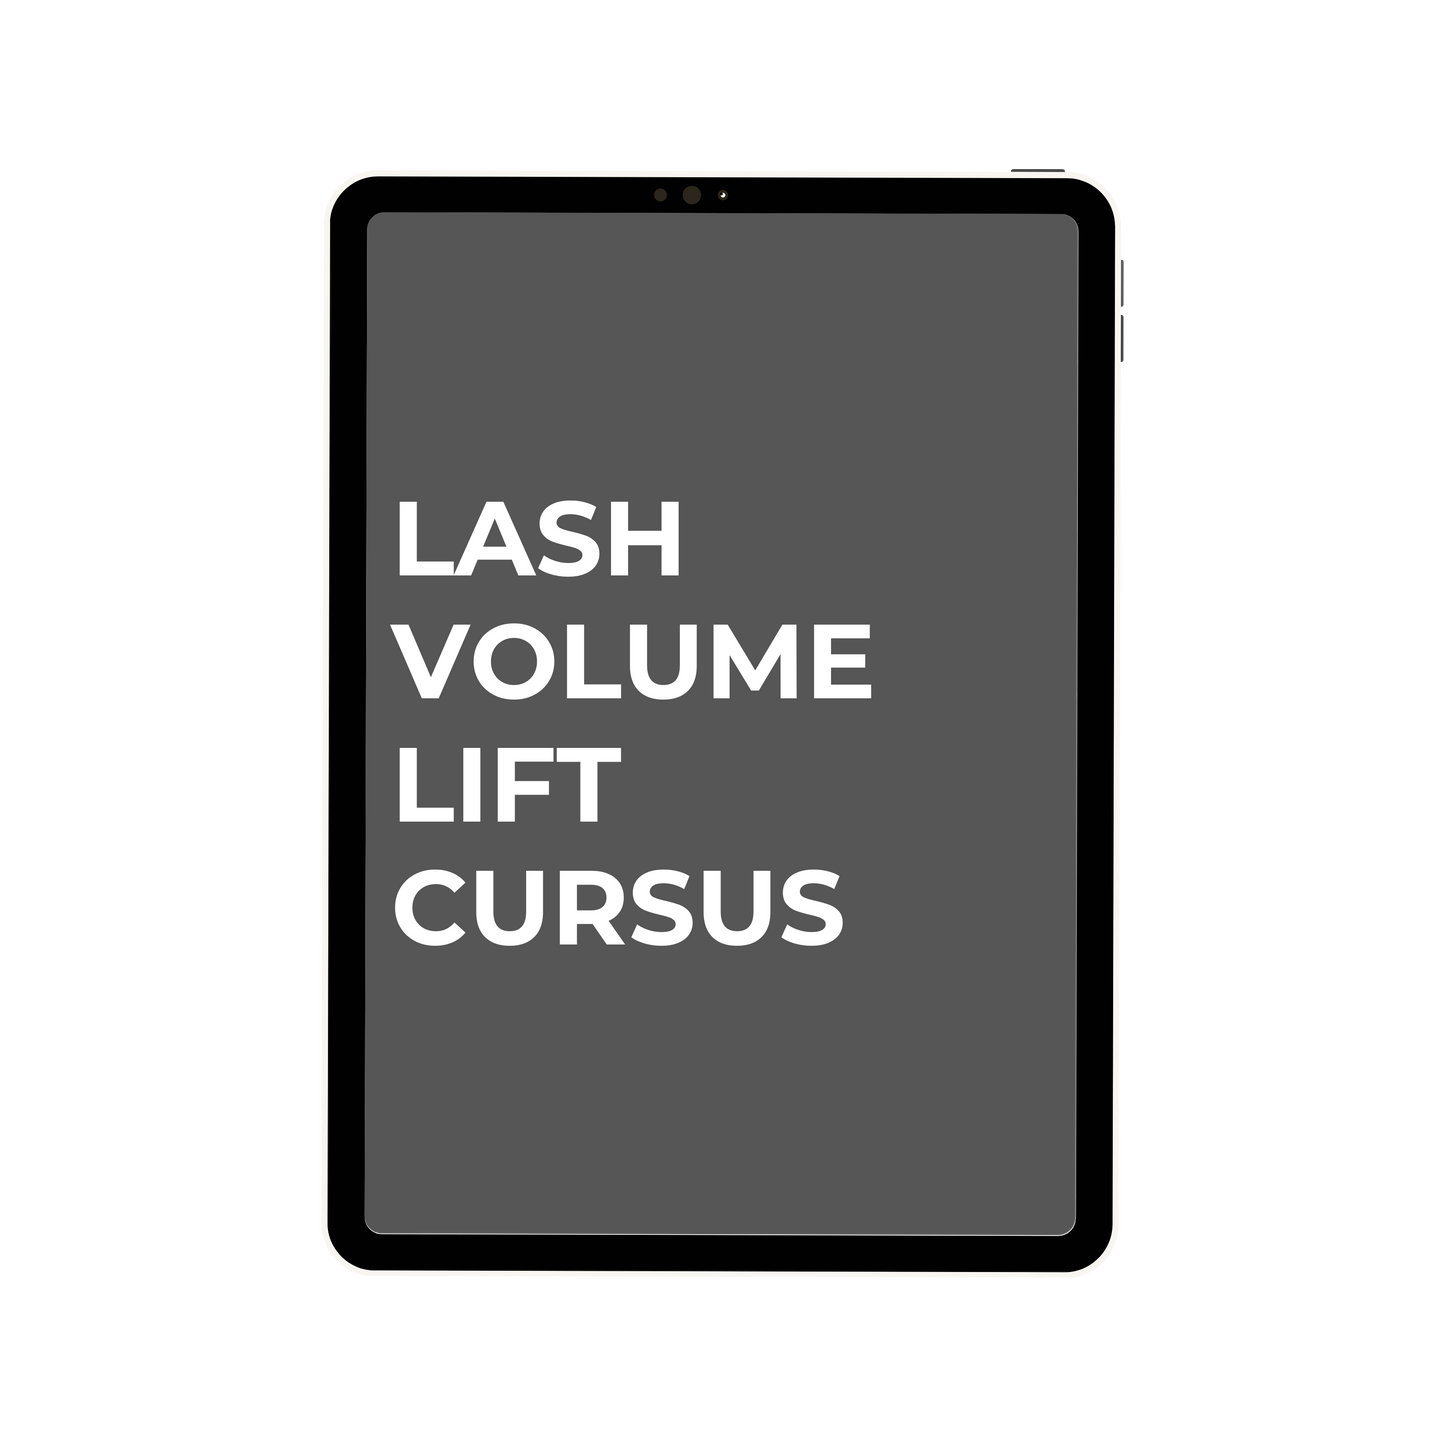 LASH VOLUME LIFT CURSUS